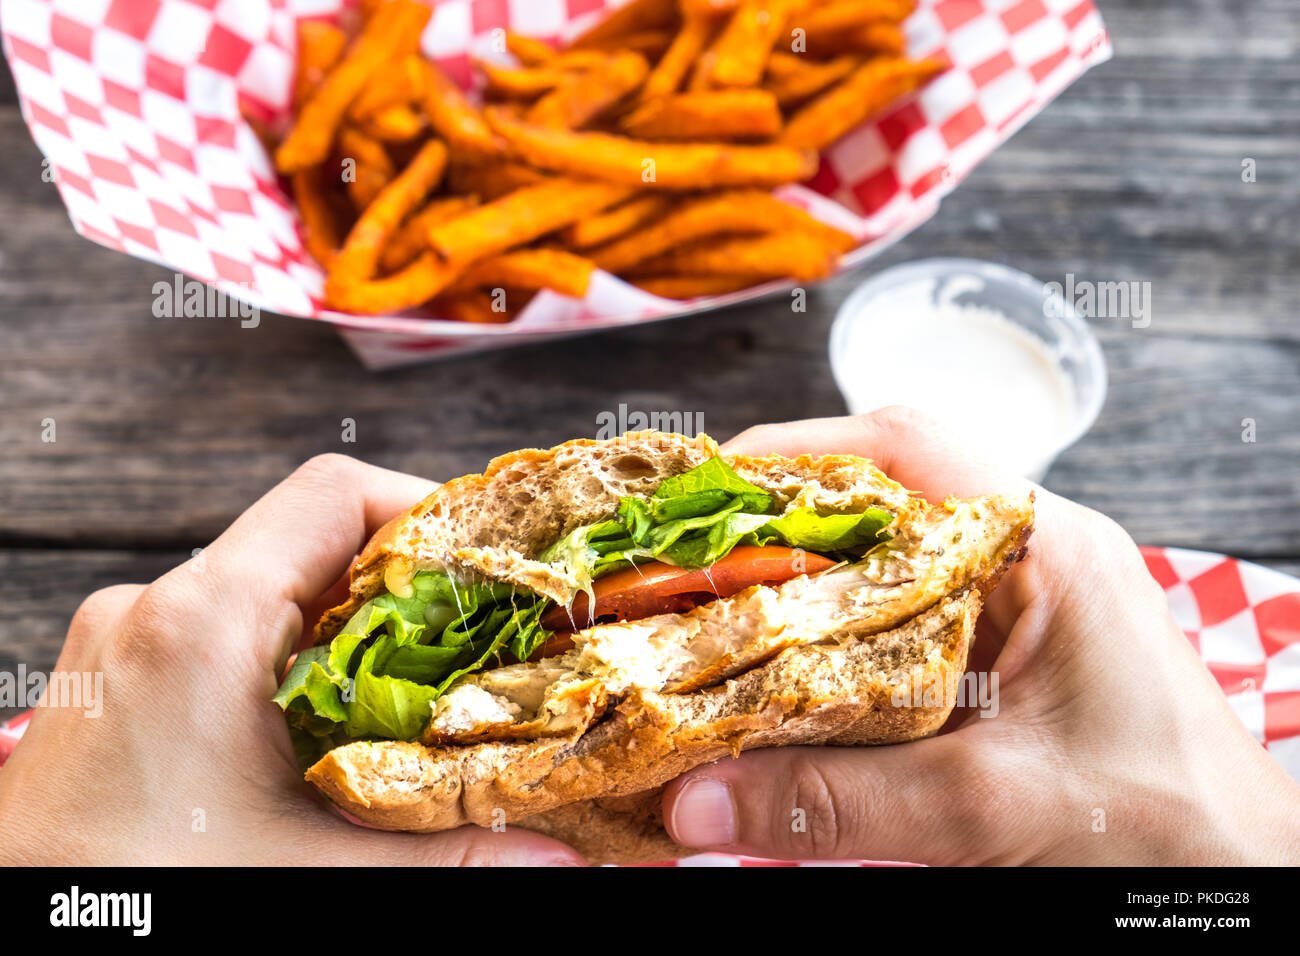 Frau Hände halten burger Stil gegrillte Hähnchenbrust Sandwich mit Salat und Tomaten und eine Seite von Kartoffel Pommes Frites Stockfoto